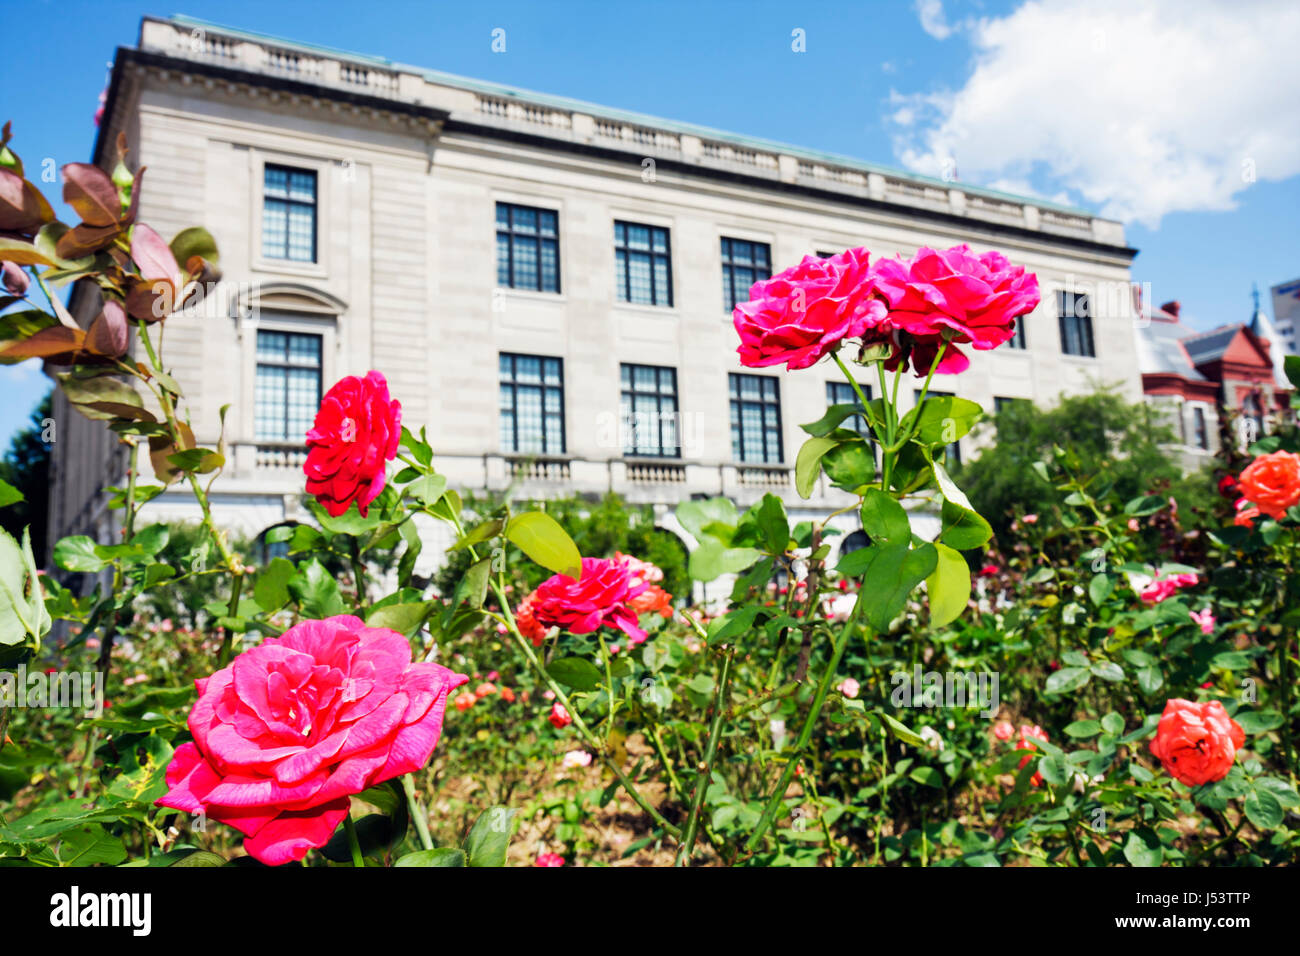 Little Rock Arkansas,Pulaski County Courthouse,roseraie,paysage,bâtiment,rose,fleur,fleur,AR080605064 Banque D'Images